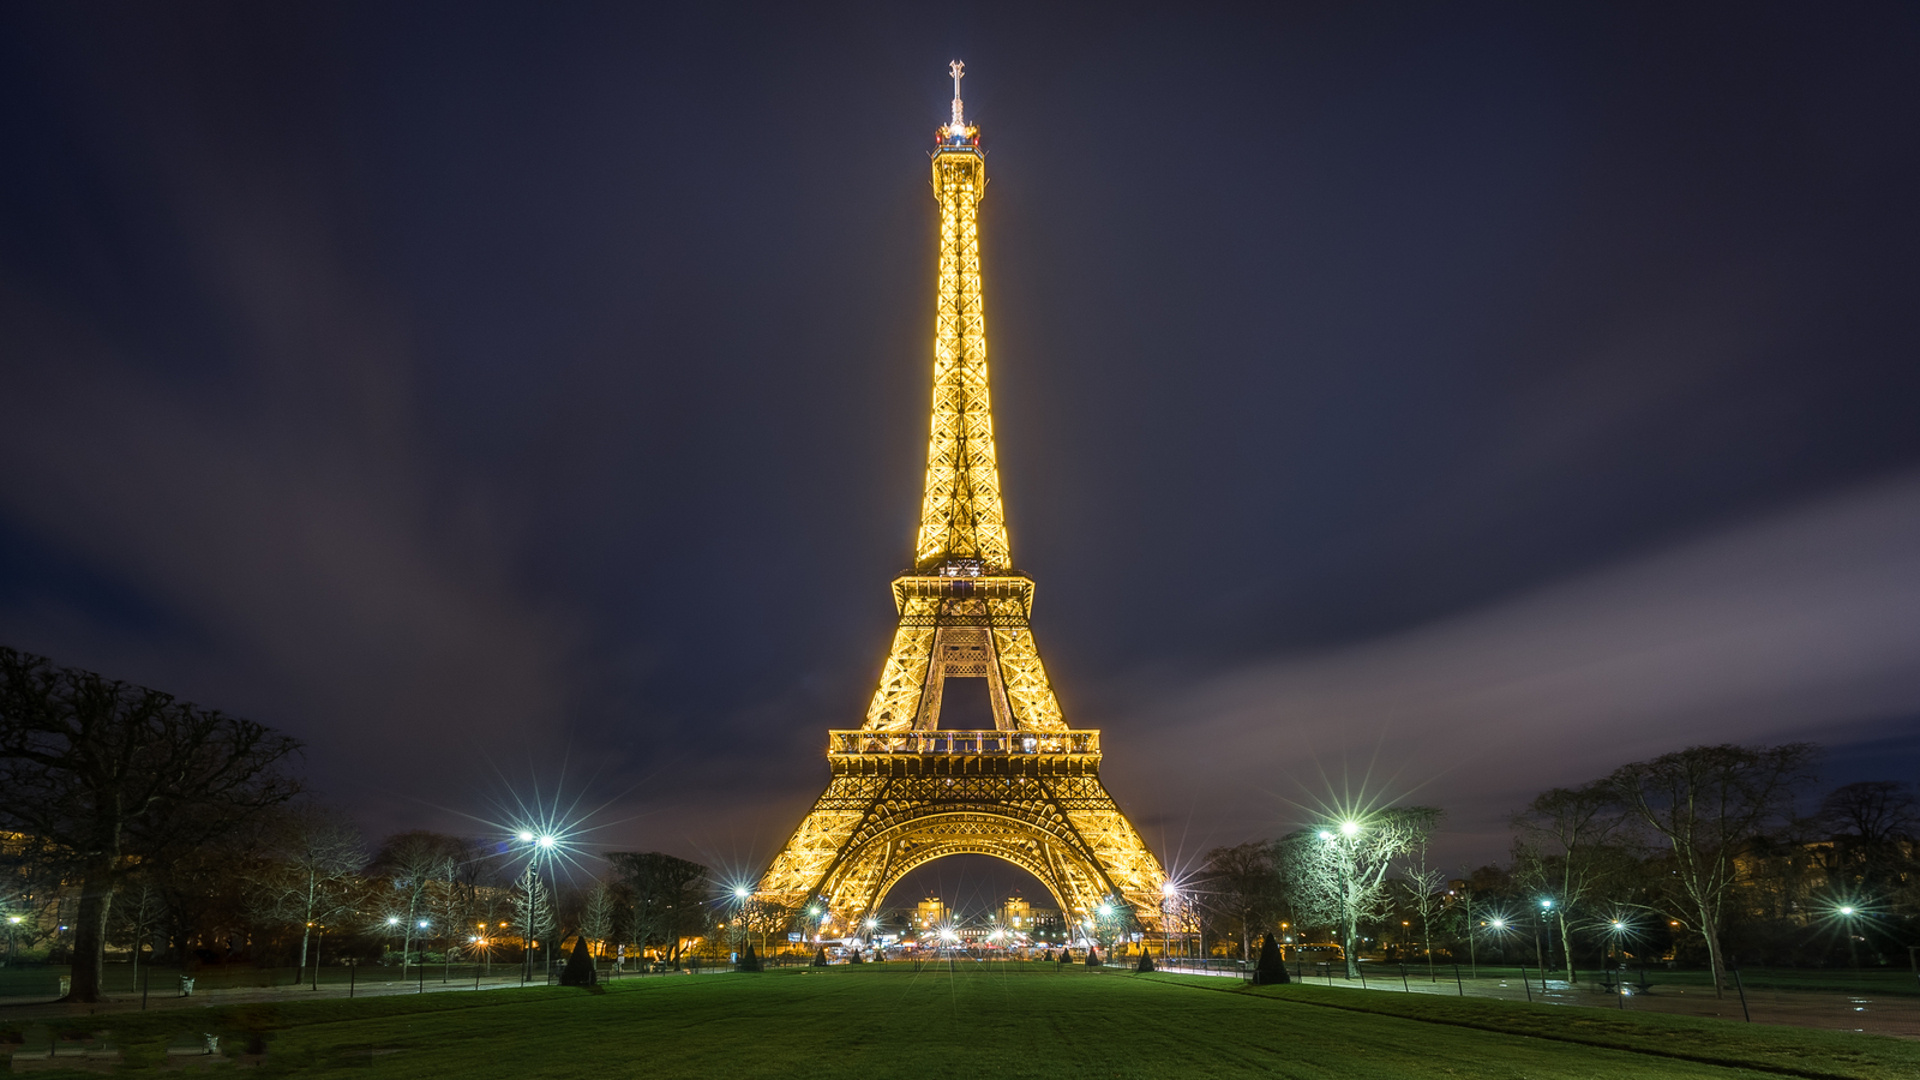 Париж, Эйфелева башня, ночной город, Франция, архитектура, обои скачать, Paris, Eiffel Tower, night city, France, architecture, wallpaper download